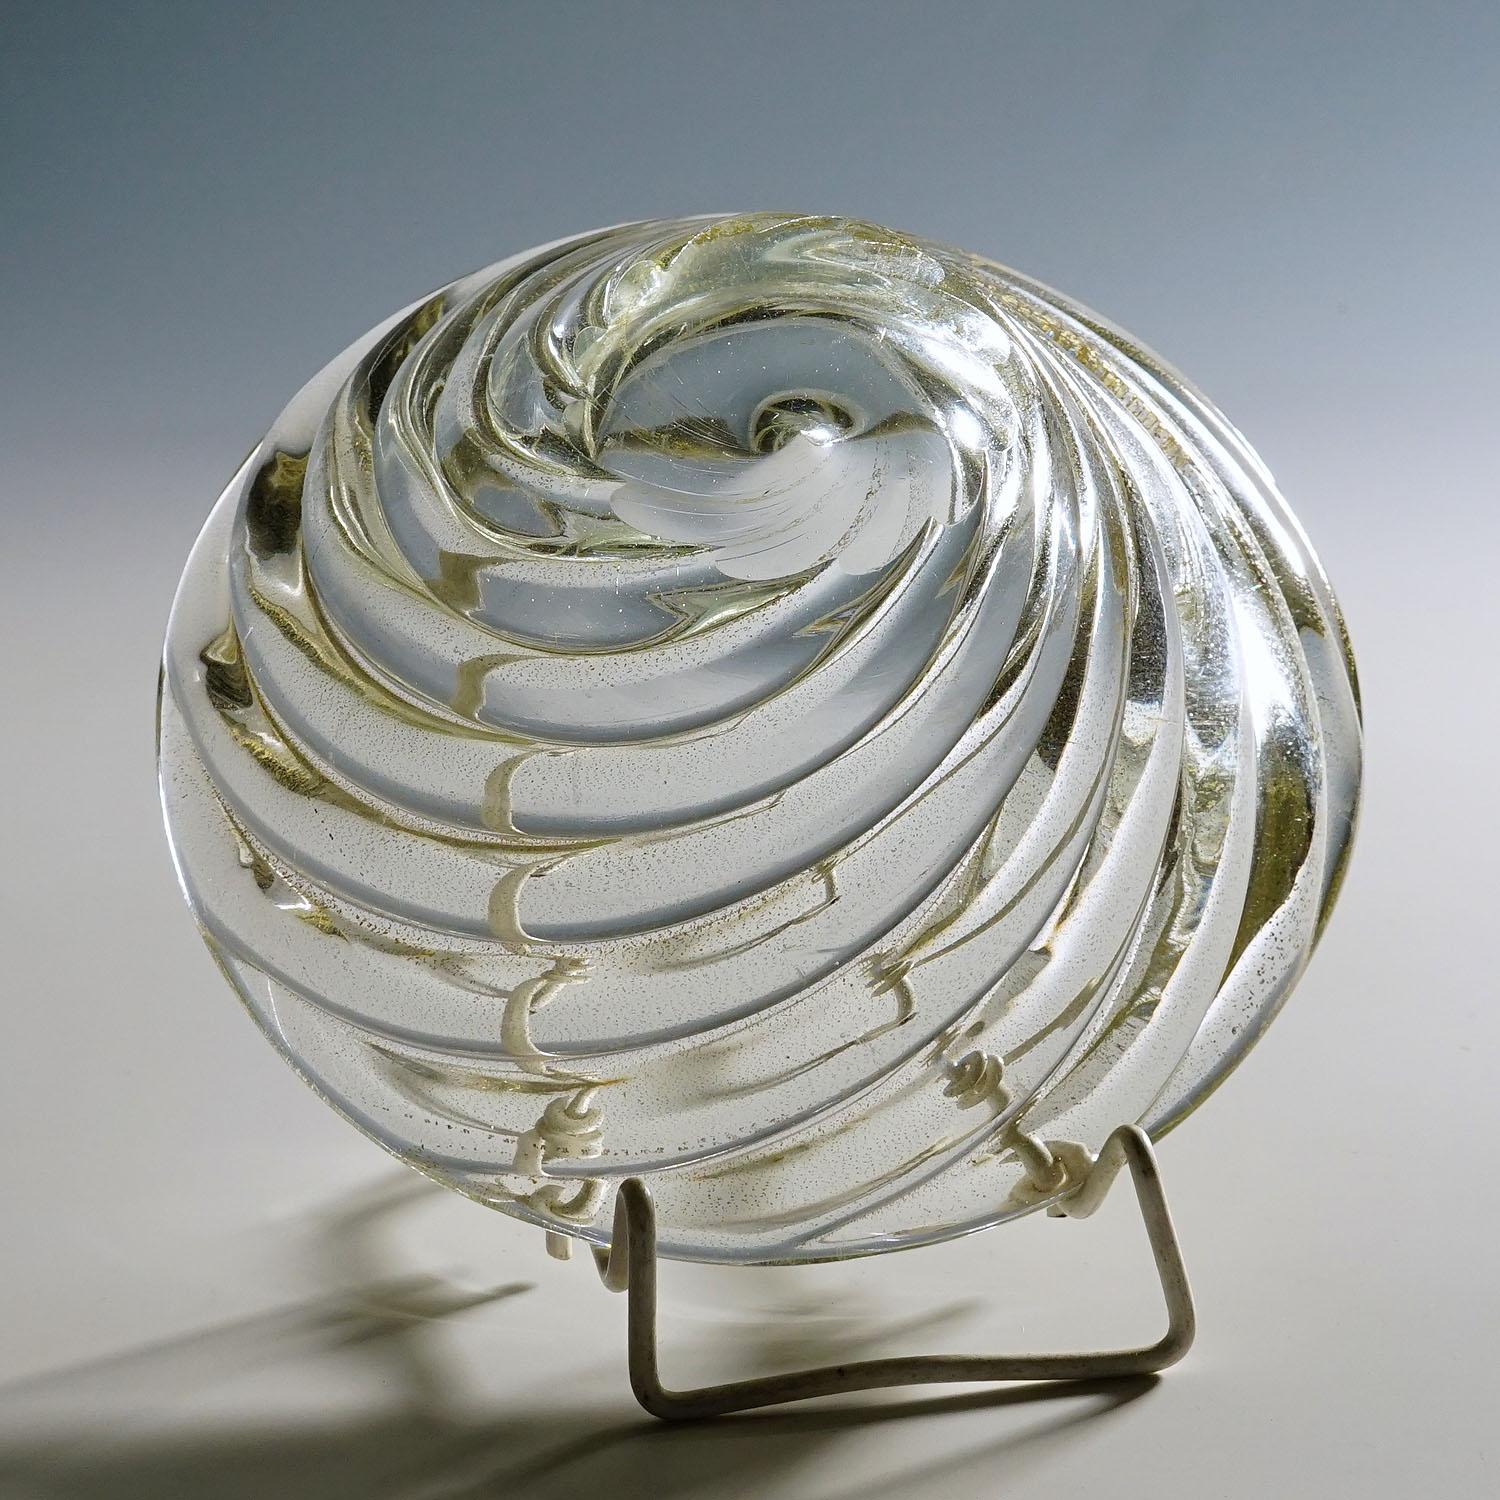 Italian Venini Art Glass Bowl 'Diamante' by Paolo Venini, Murano 1930s For Sale